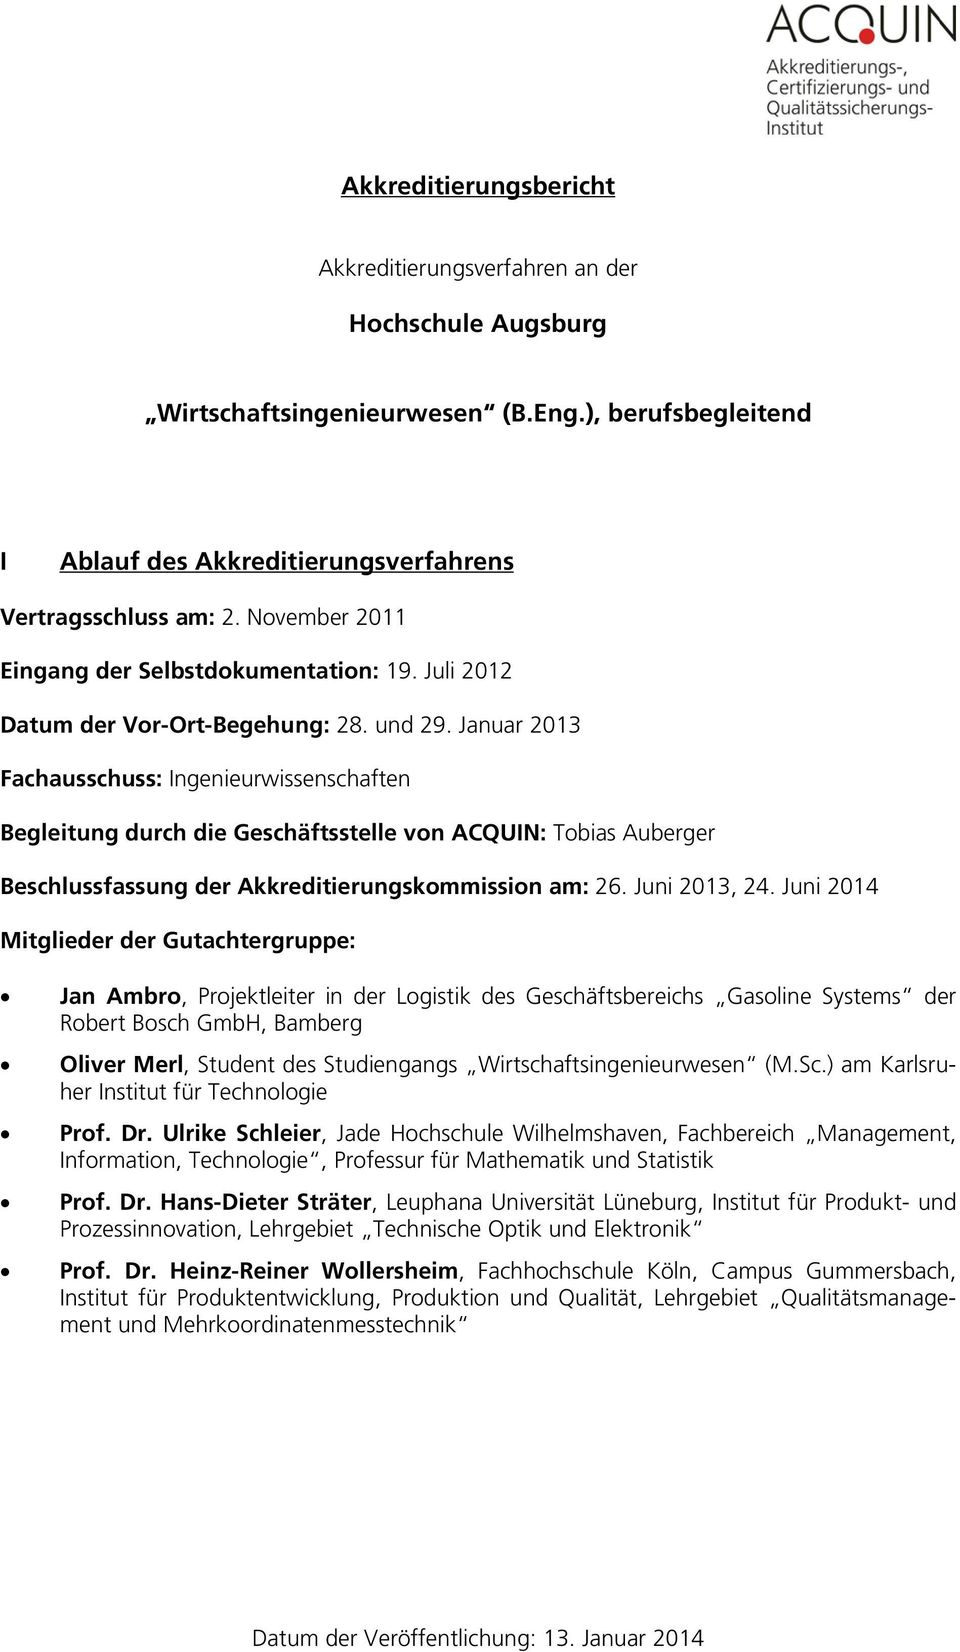 Januar 2013 Fachausschuss: Ingenieurwissenschaften Begleitung durch die Geschäftsstelle von ACQUIN: Tobias Auberger Beschlussfassung der Akkreditierungskommission am: 26. Juni 2013, 24.